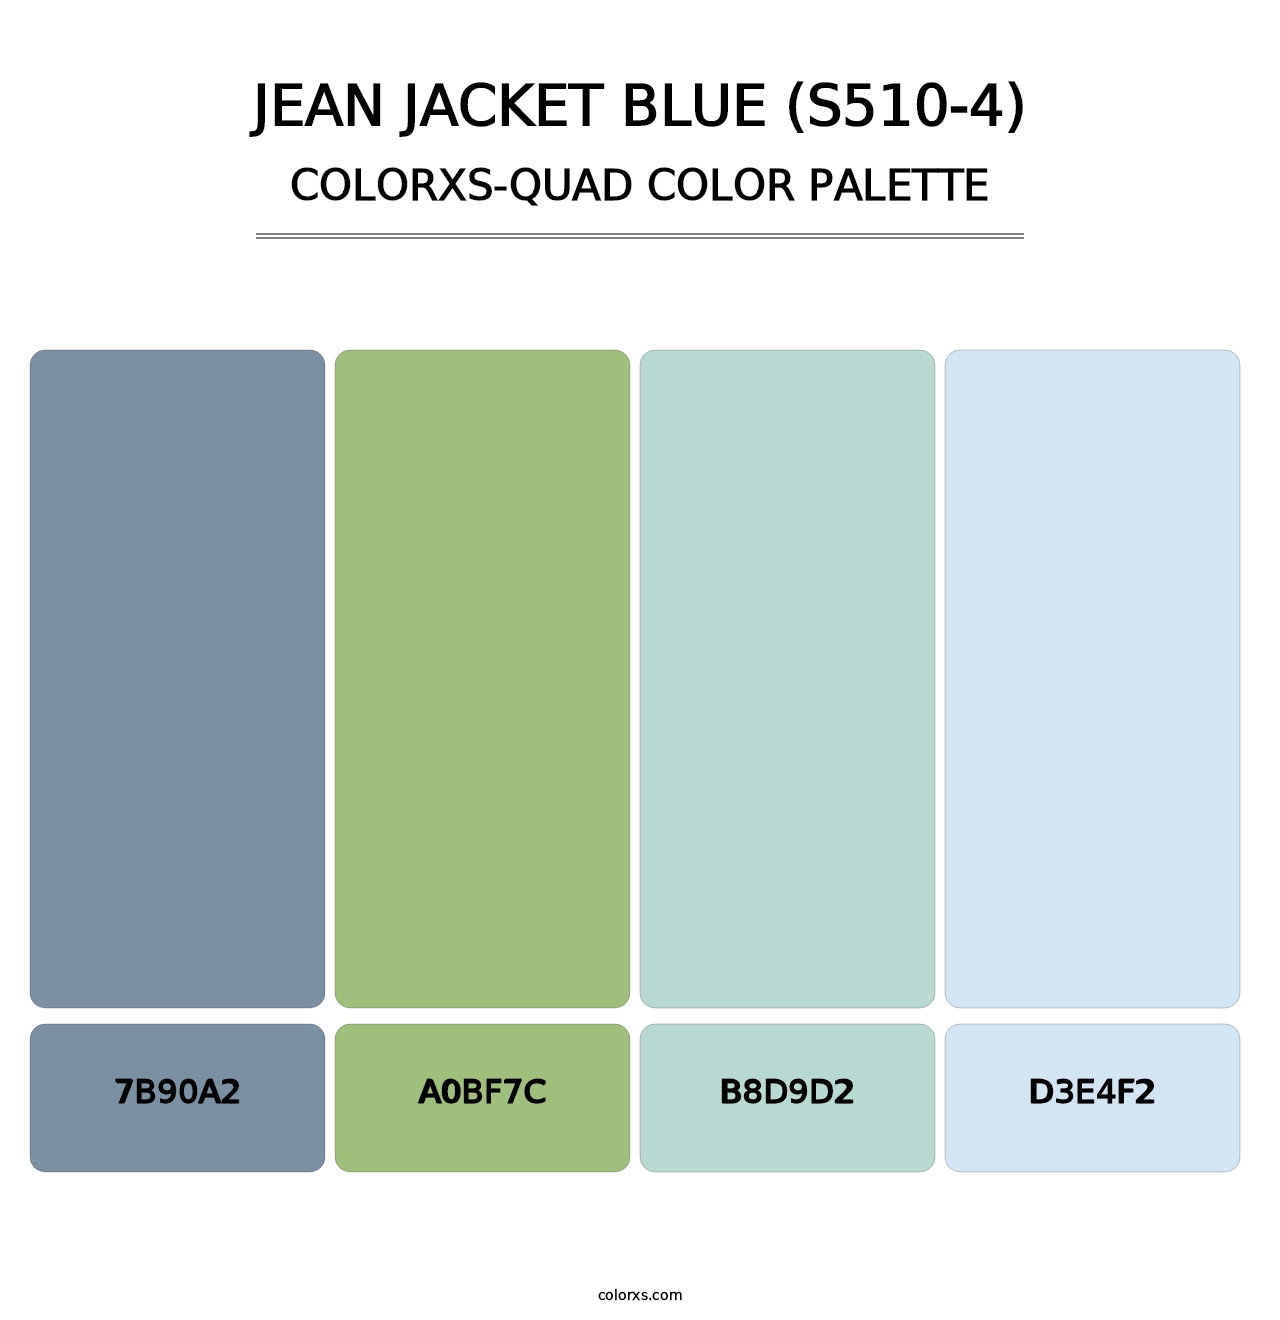 Jean Jacket Blue (S510-4) - Colorxs Quad Palette